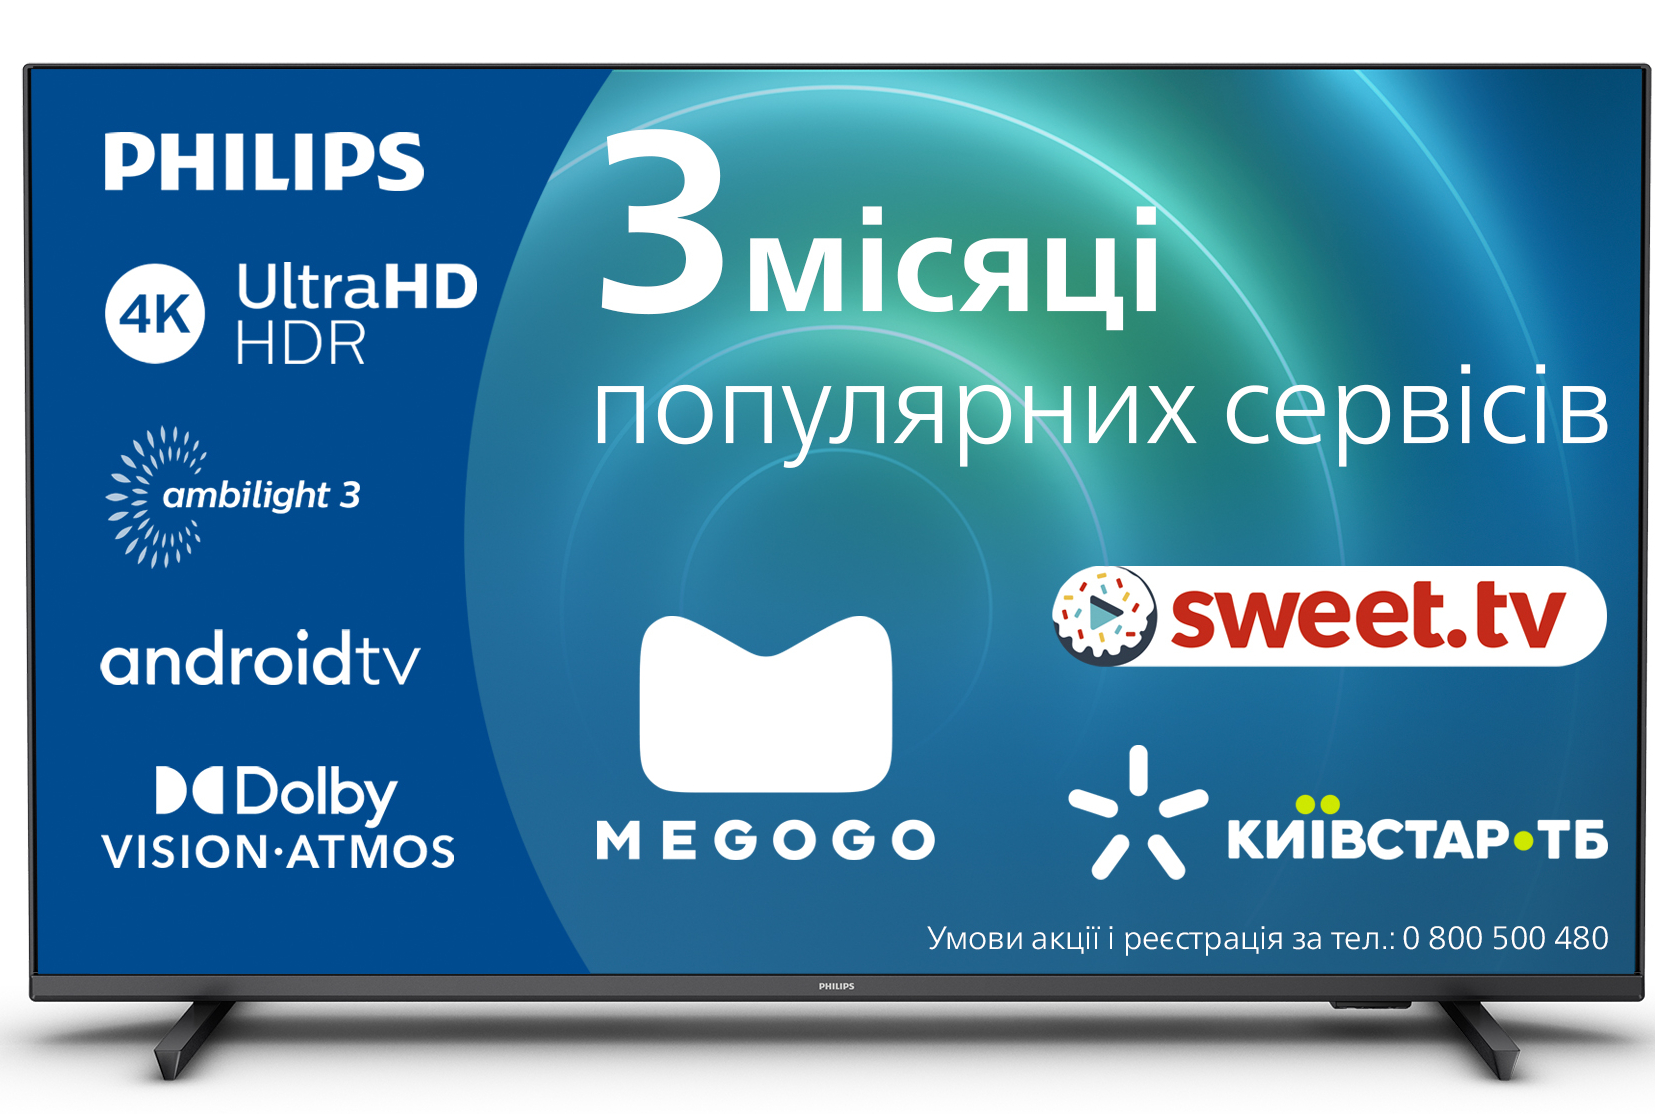 Телевизор Philips 55PUS8118/12 купить по низкой цене в Киеве, Харькове,  Днепр, Одессе, Львове, Украине